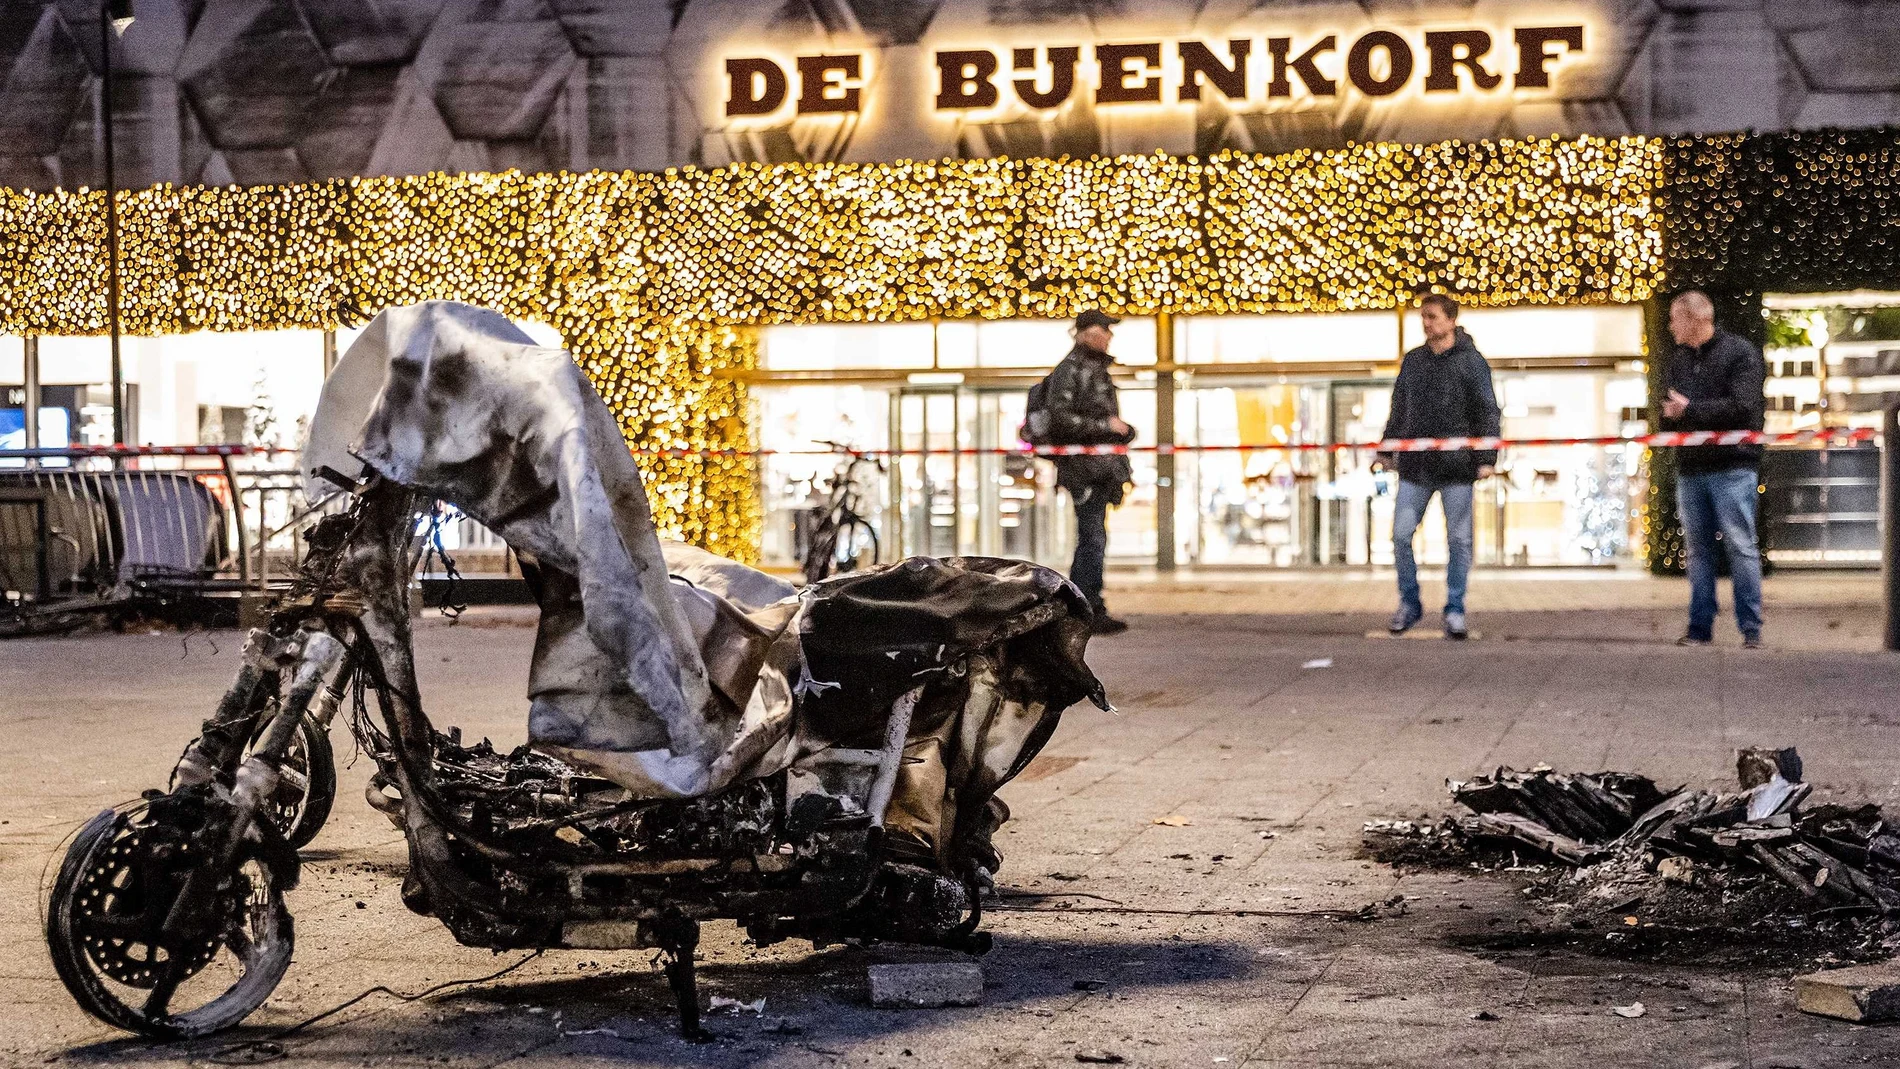 Imagen de una motocicleta quemada tras la fuerte protesta contra las medidas anticovid en Rotterdam, Holanda